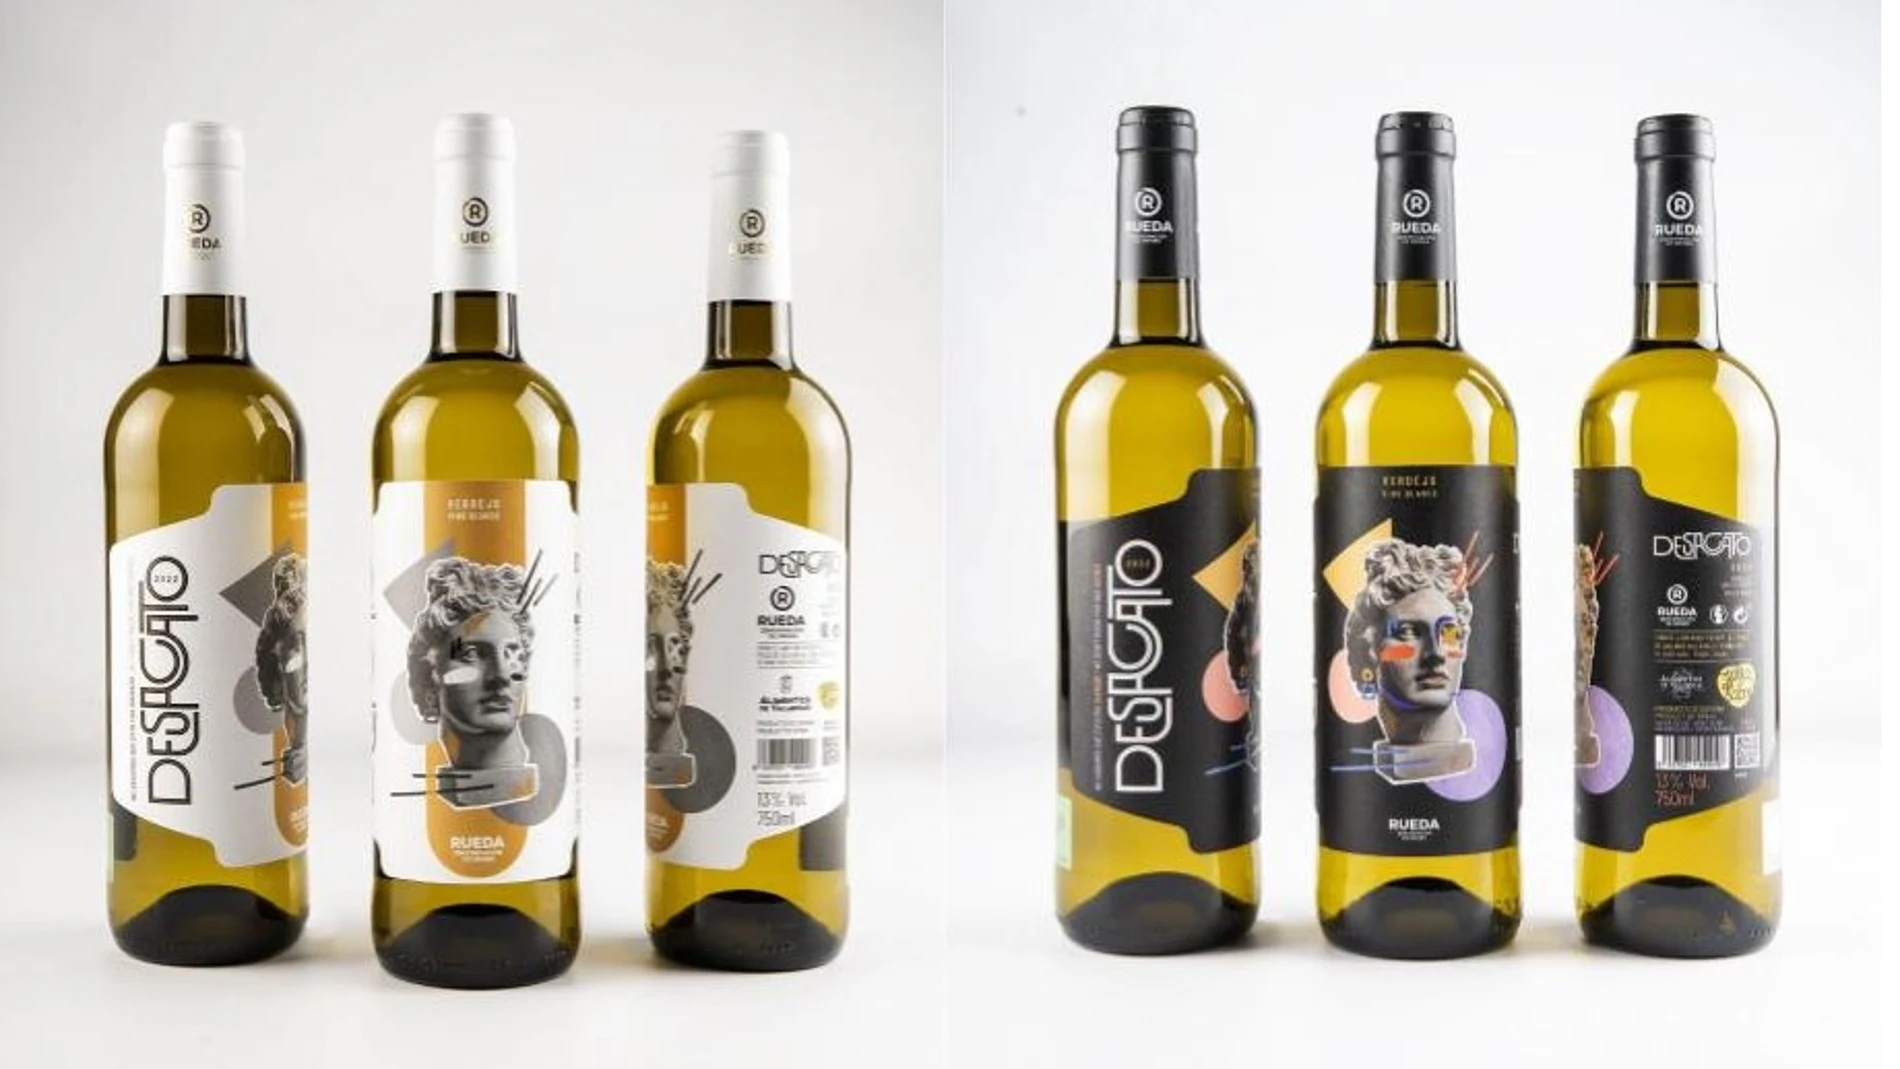 Grupo Pistacyl presenta la tercera añada de Desacato, su vino cien por cien verdejo de la D.O. Rueda